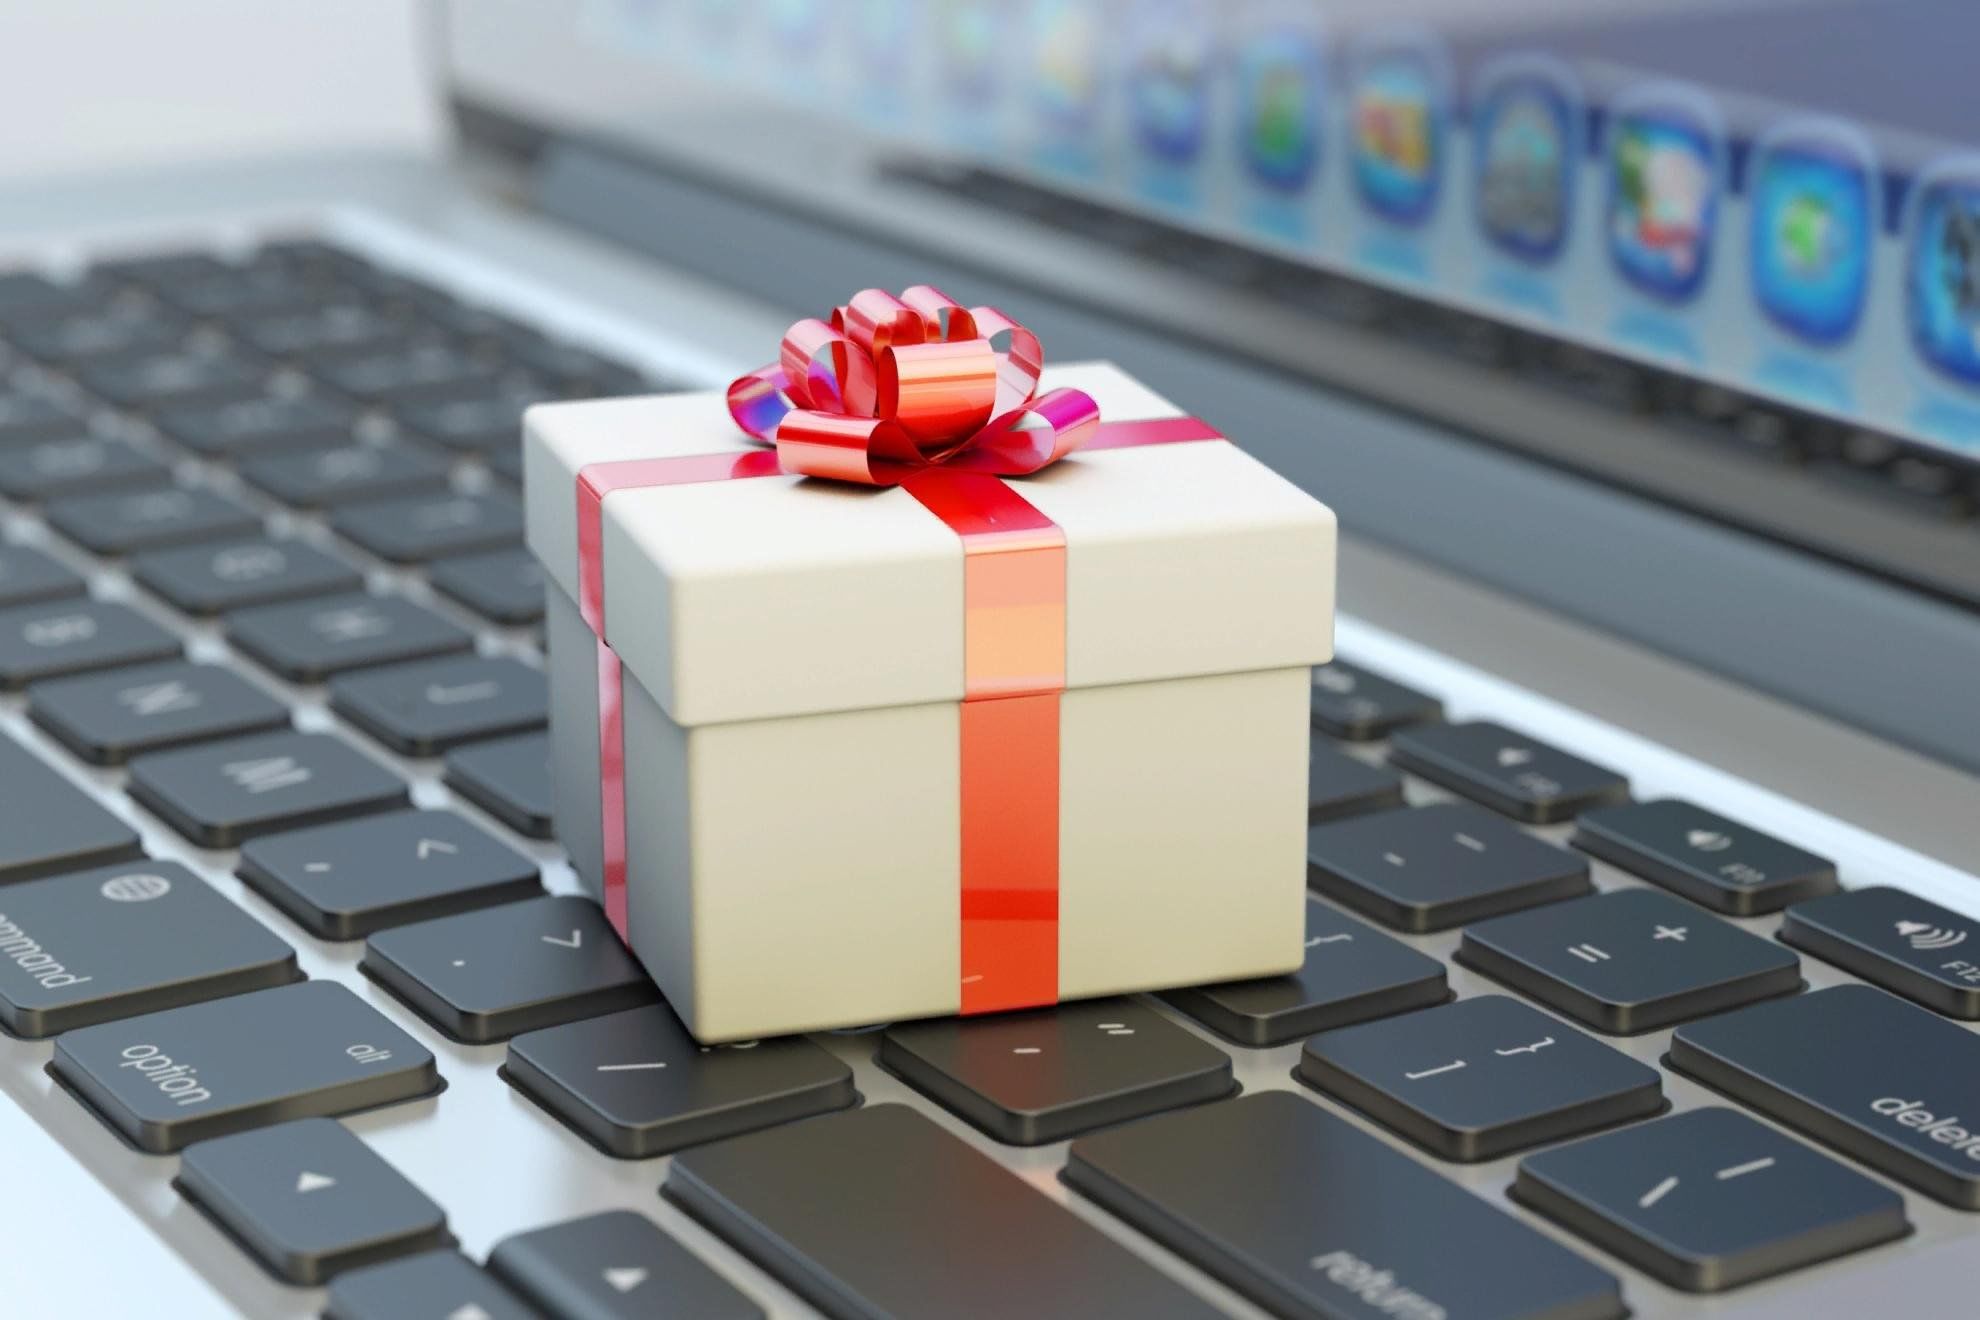 Заказать интернет на день. Подарок. Интернет в подарок. Виртуальный подарок. Ноутбук в подарок.